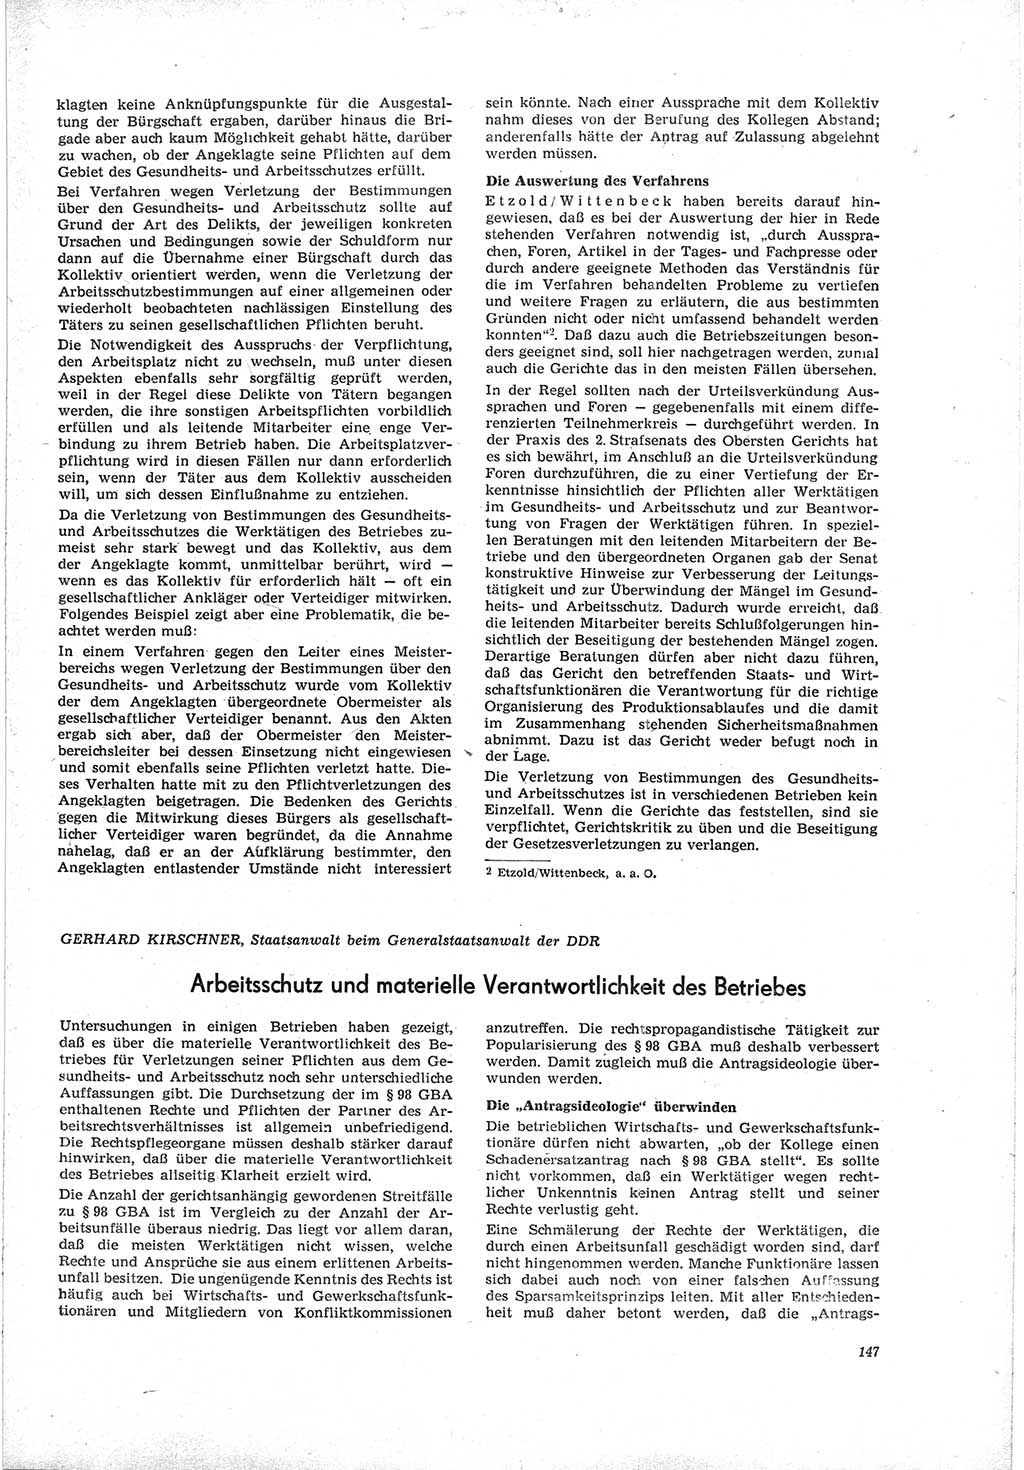 Neue Justiz (NJ), Zeitschrift für Recht und Rechtswissenschaft [Deutsche Demokratische Republik (DDR)], 19. Jahrgang 1965, Seite 147 (NJ DDR 1965, S. 147)